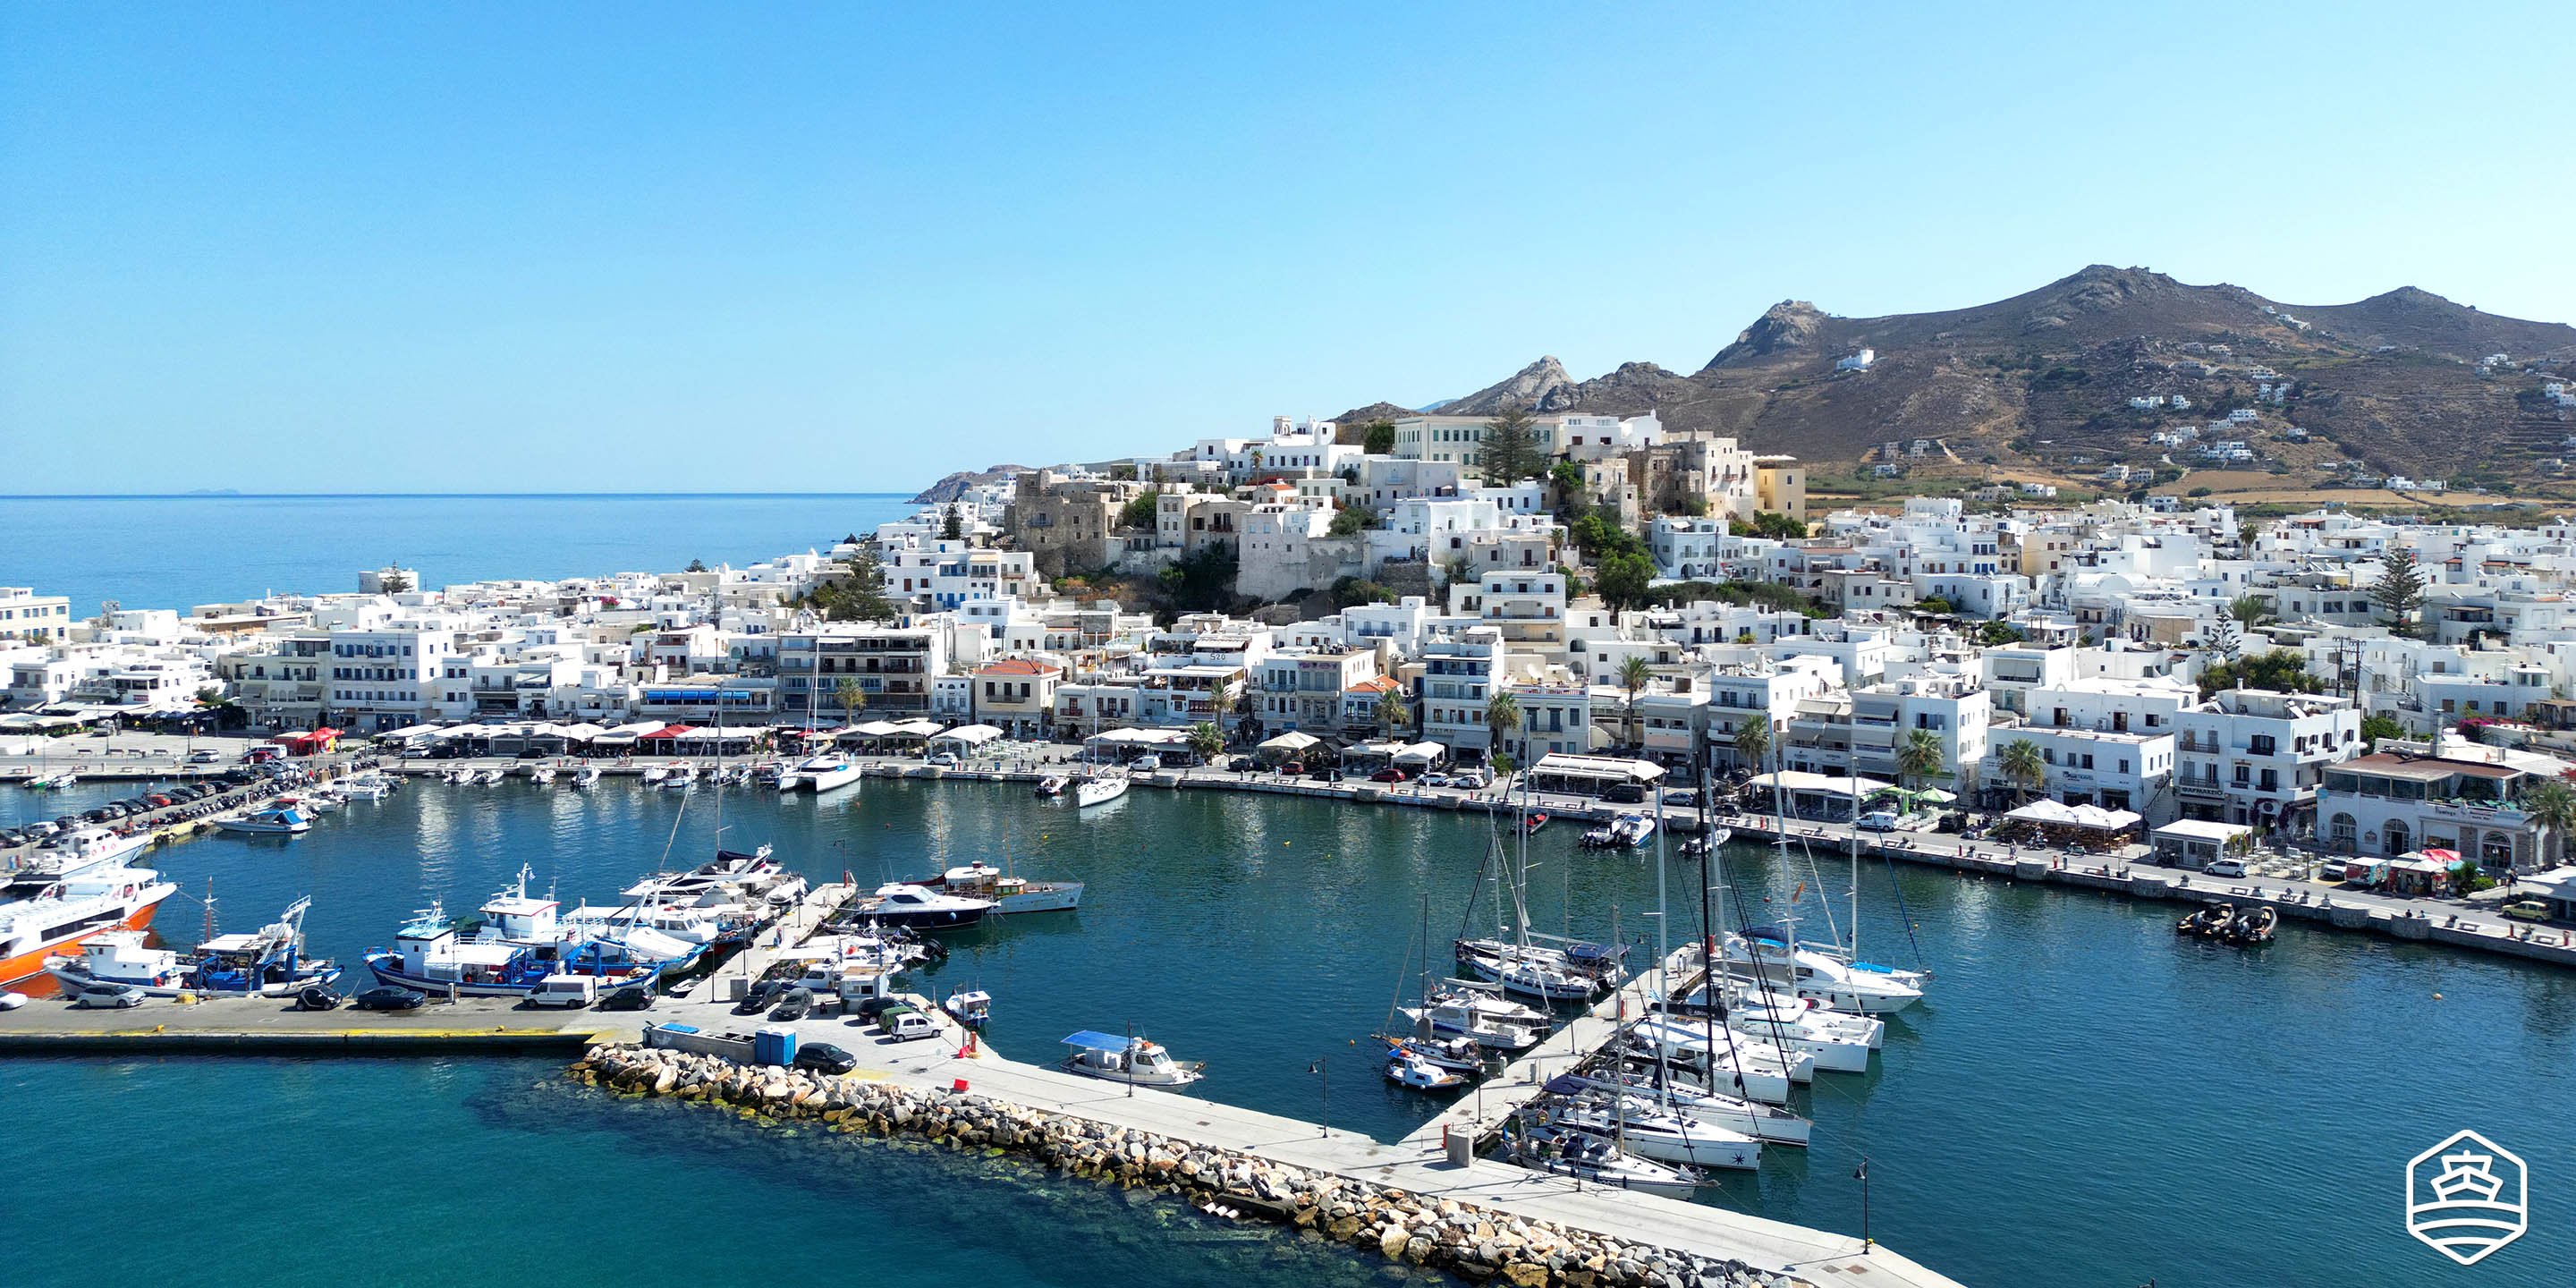 Vue aérienne de la ville et du port de l'île de Naxos